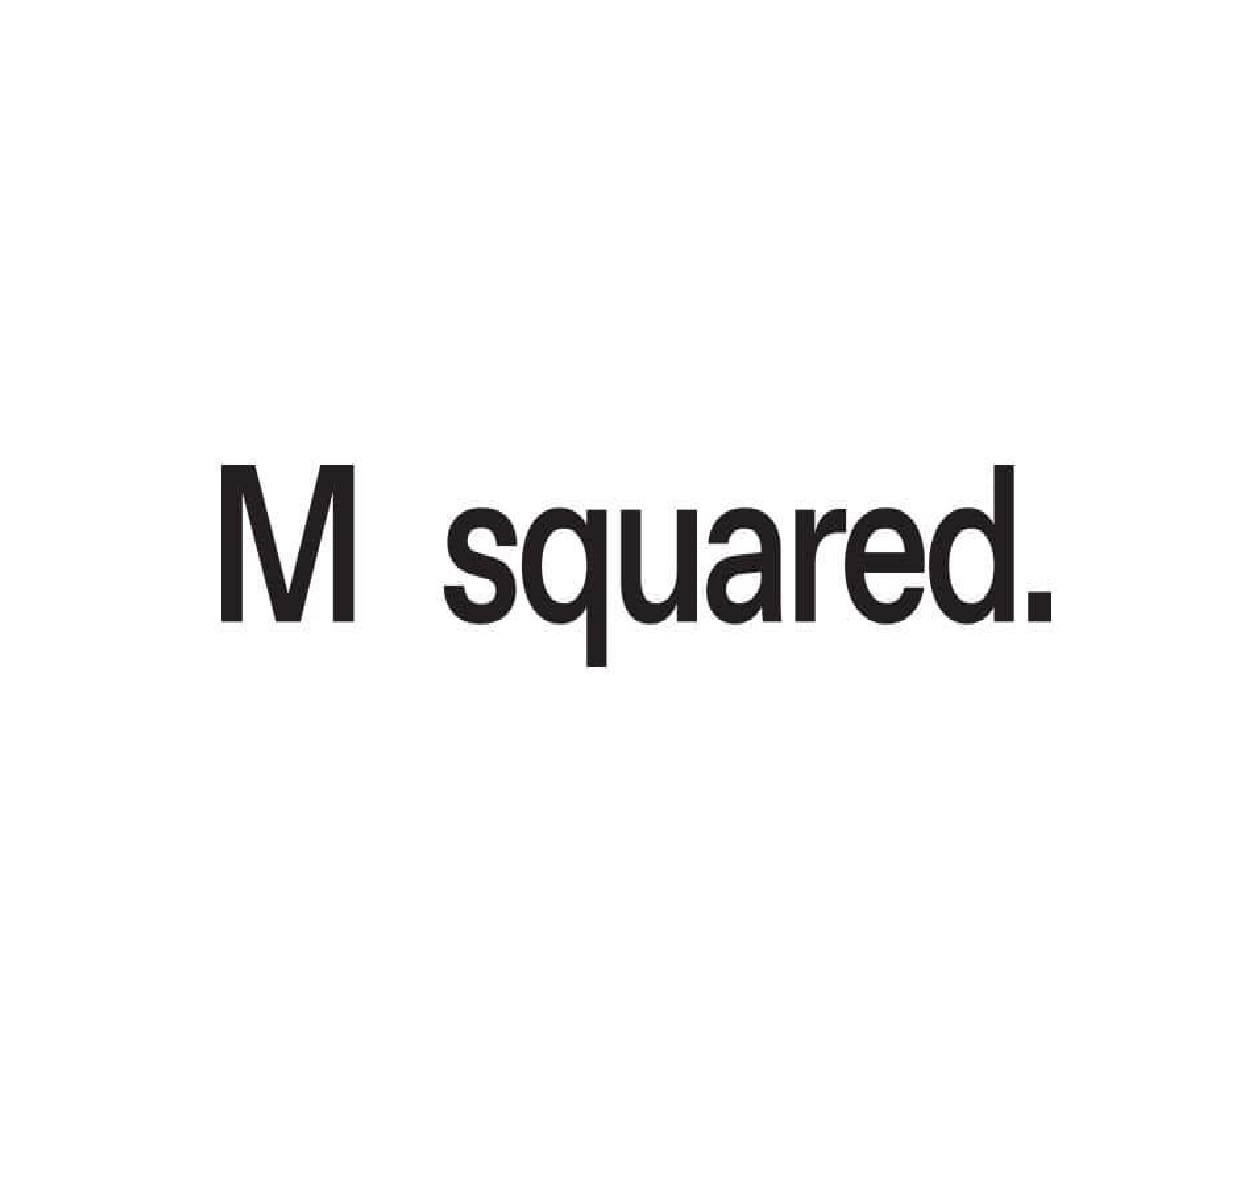 M Square